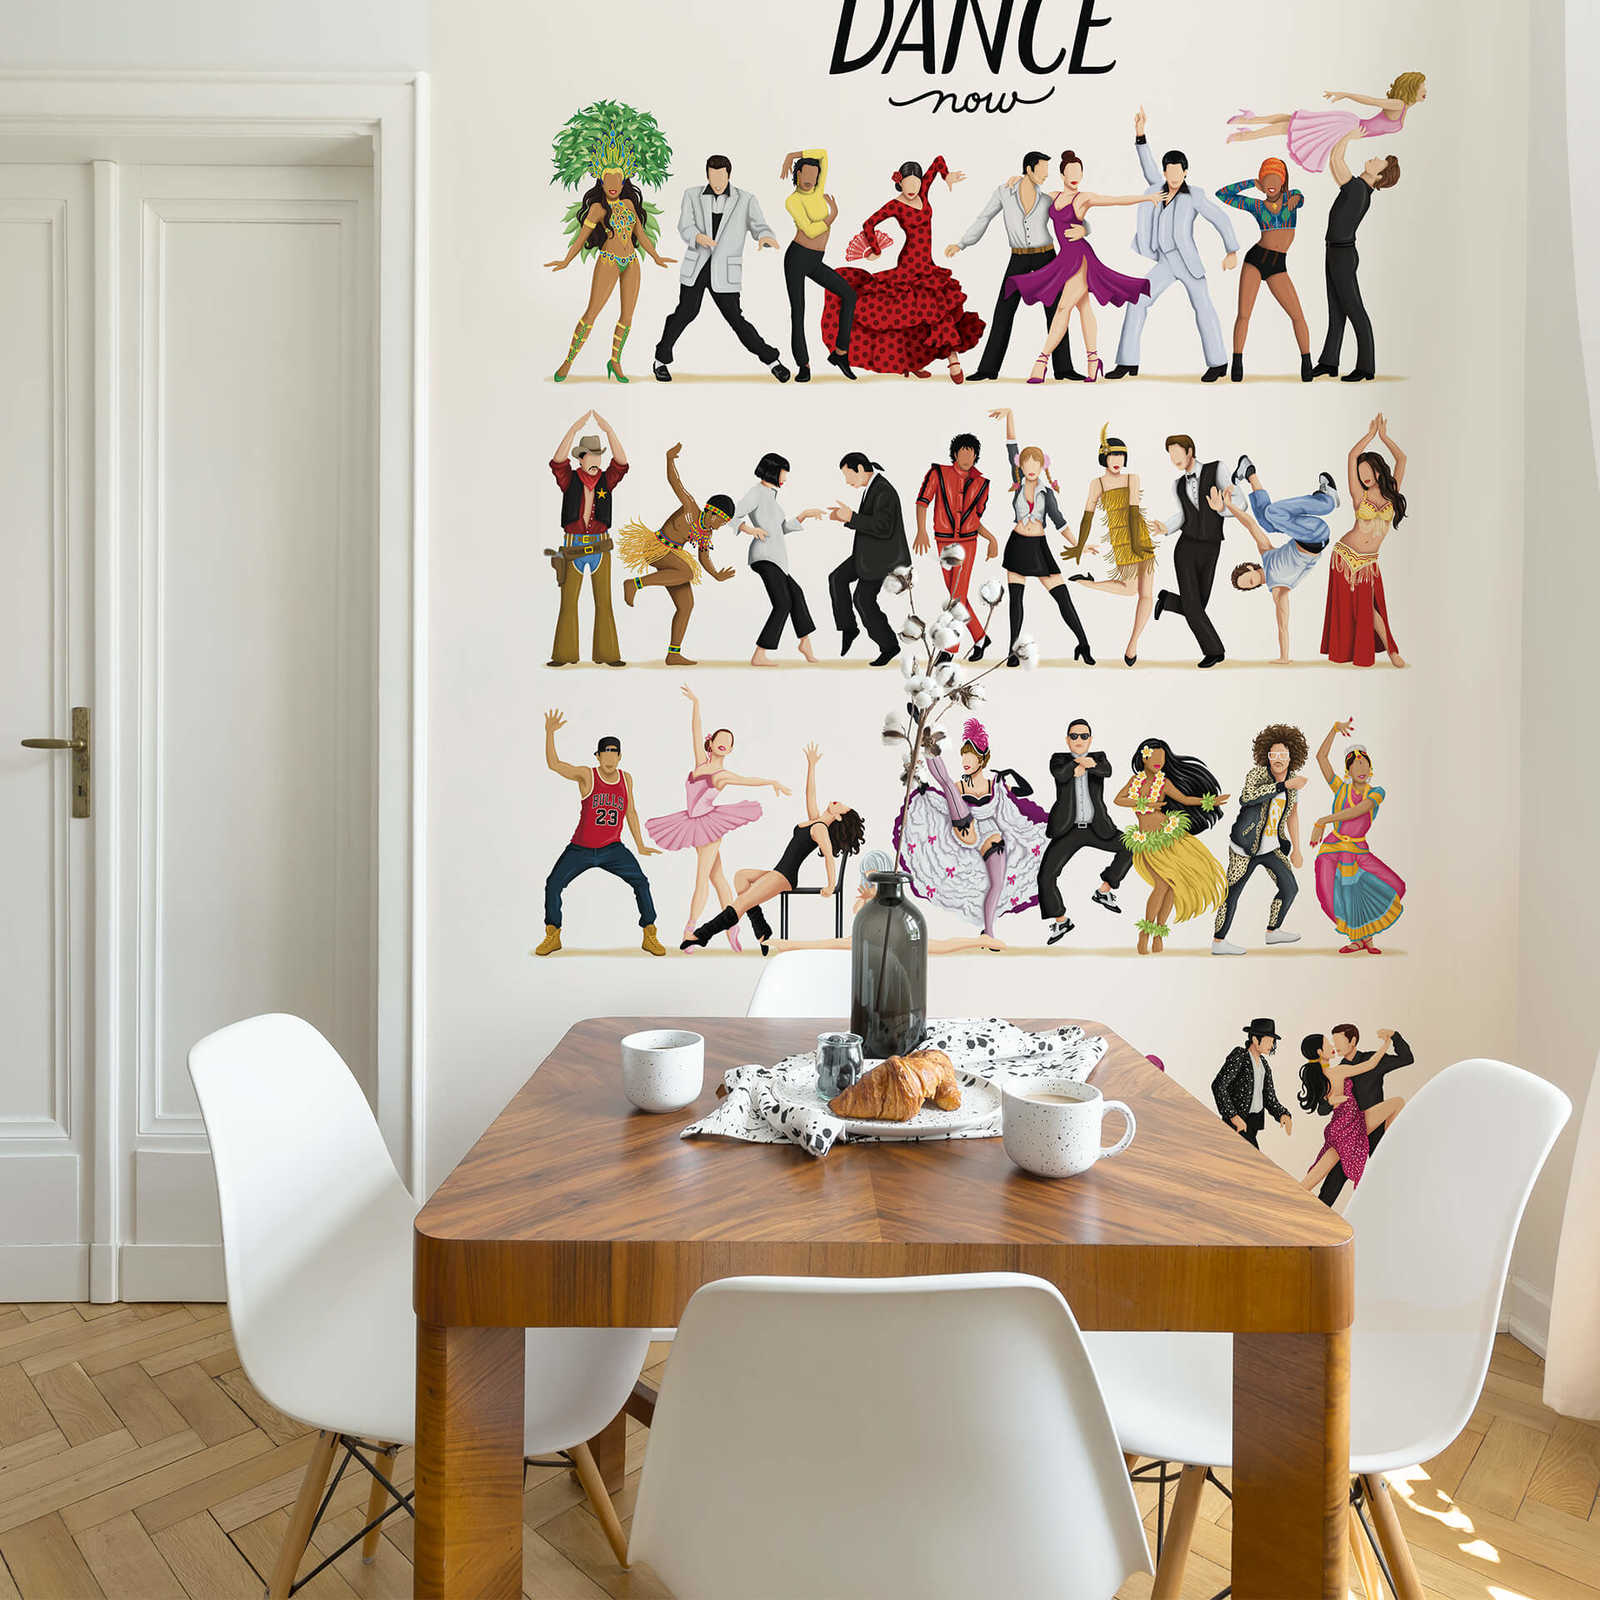             Dansende mensen geschetste muurschildering
        